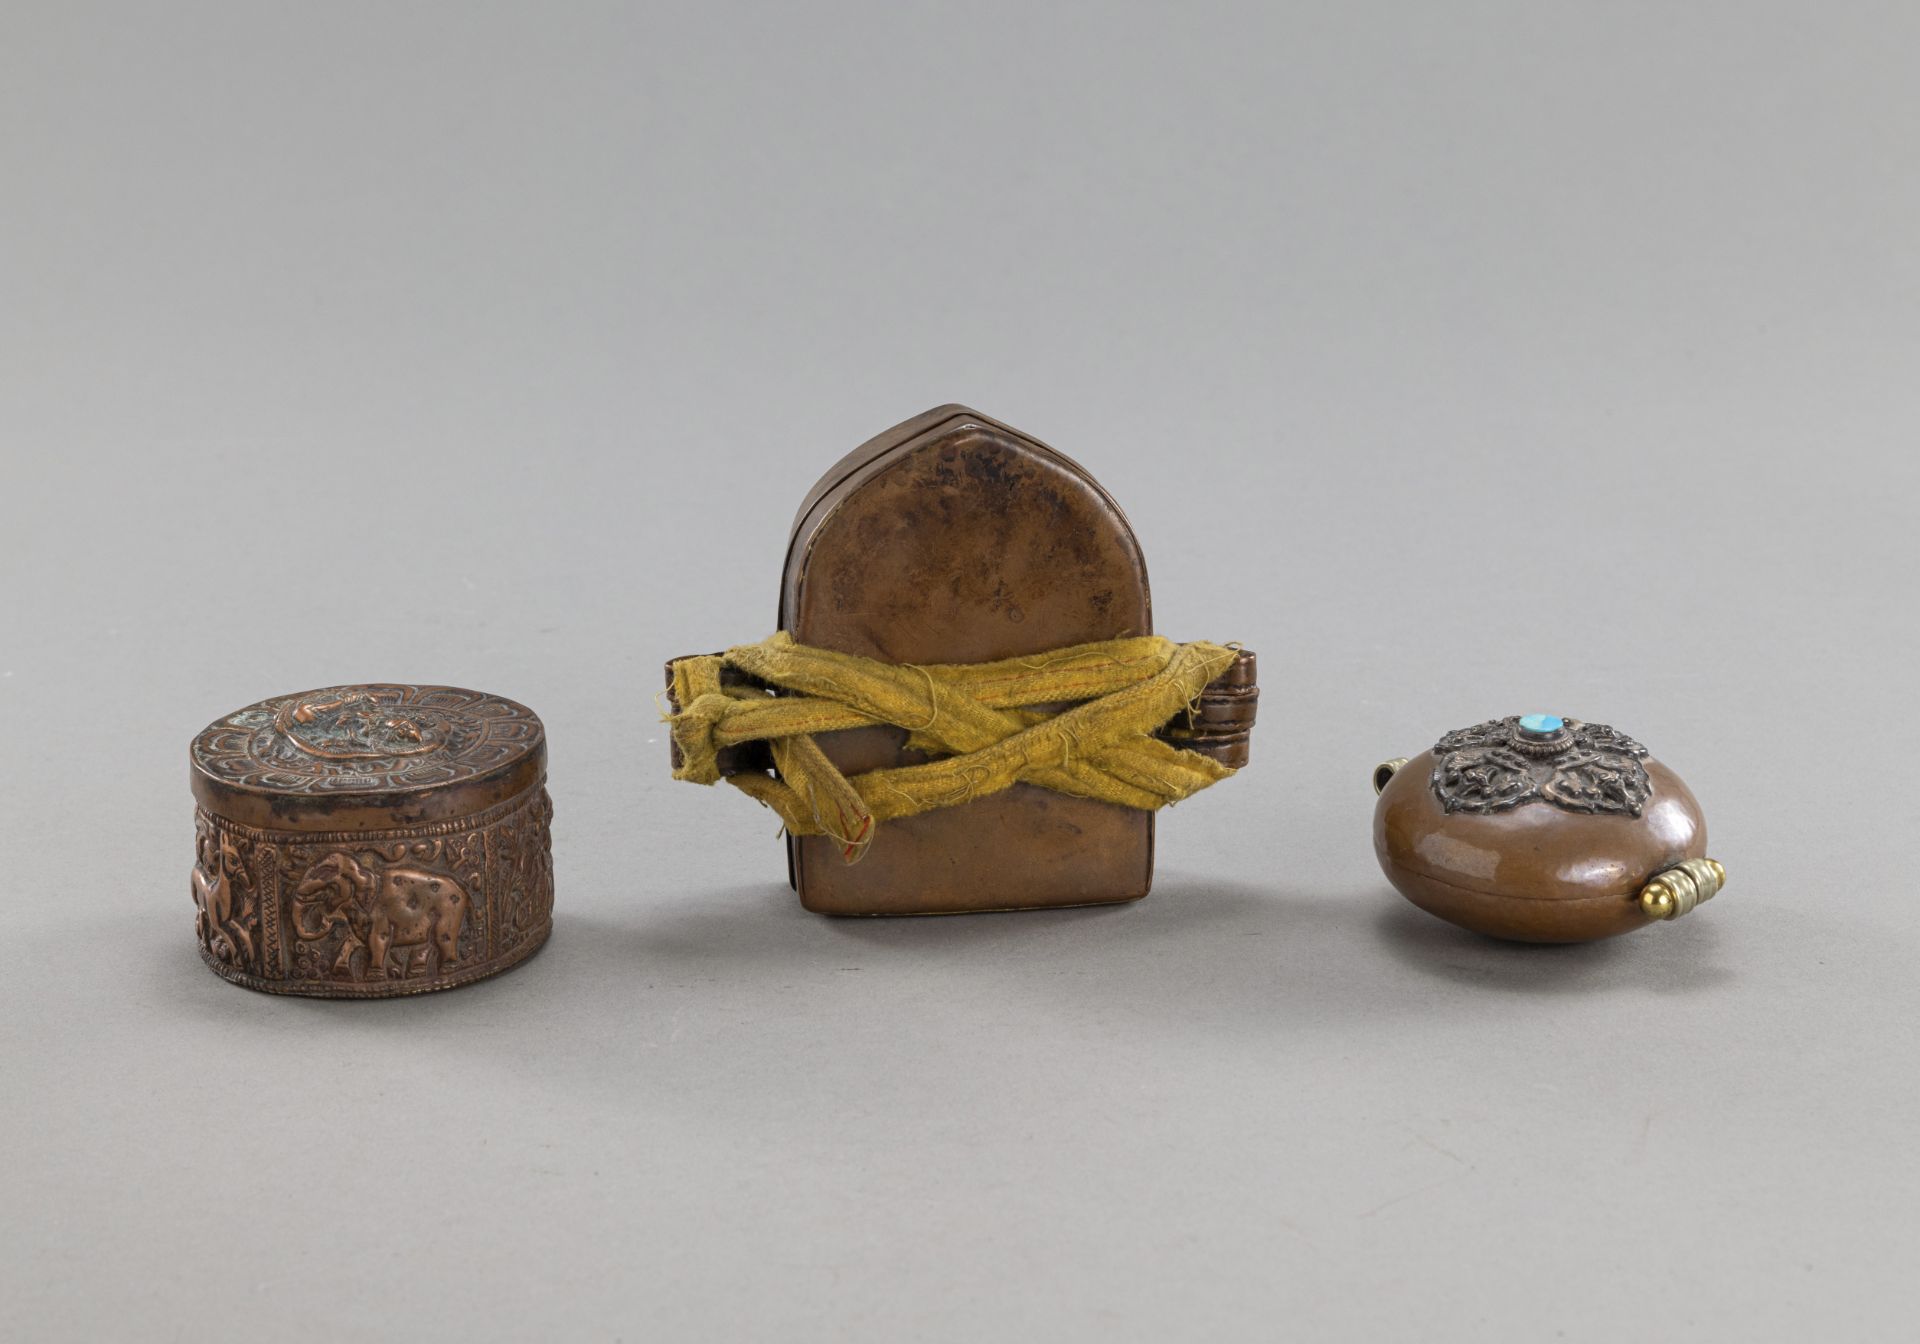 Gruppe von drei Reiseschreinen (ga'u) aus u.a. Kupfer, eins ritual gefüllt - Bild 2 aus 3